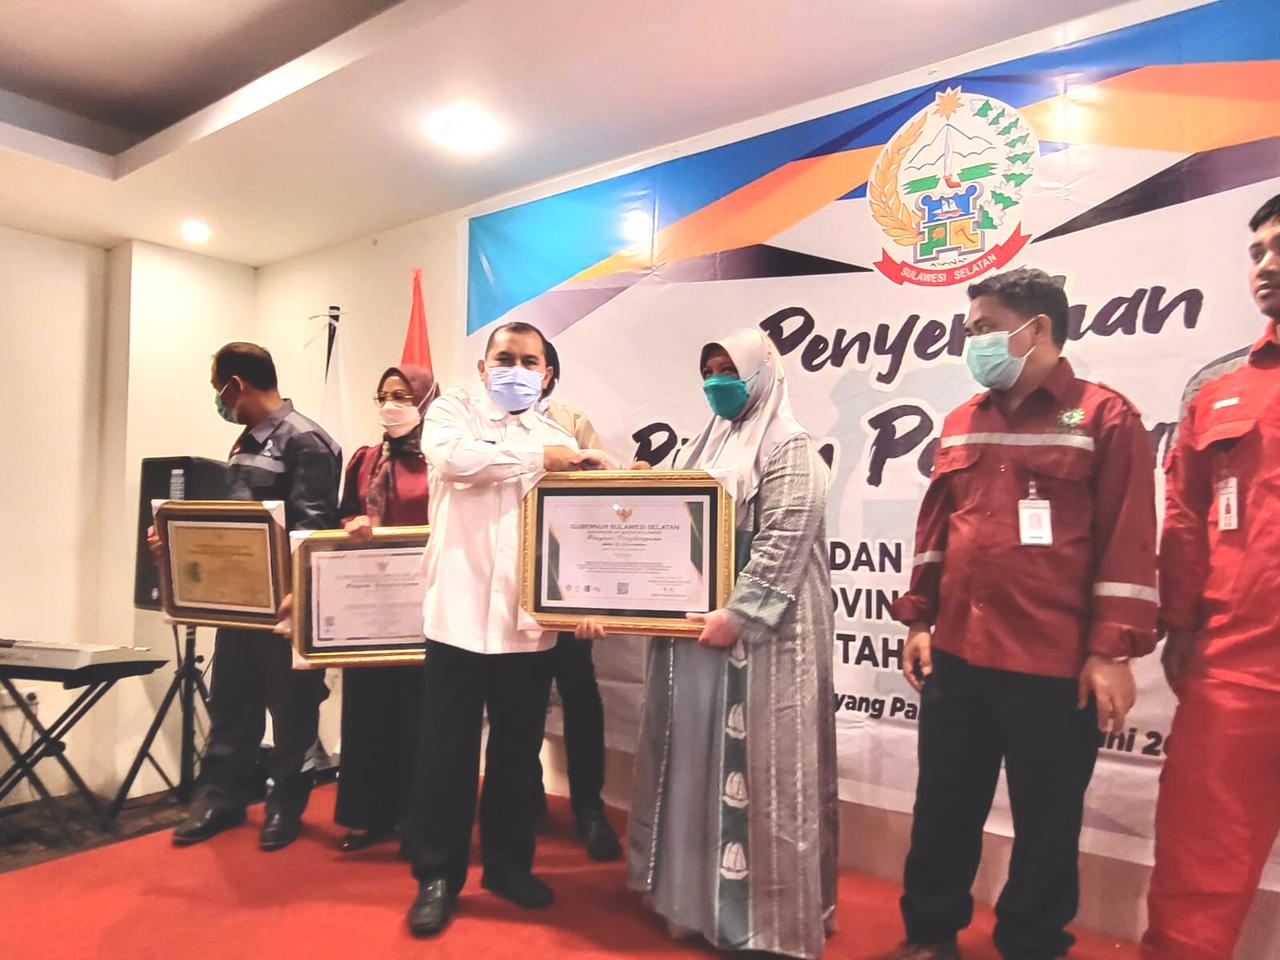 Ketua Sekolah Tinggi Ilmu Kesehatan (STIK) Makassar, Esse Puji Pawenrusi SKM M.Kes menerima penghargaan dari Pemerintah Provinsi Sulawesi Selatan